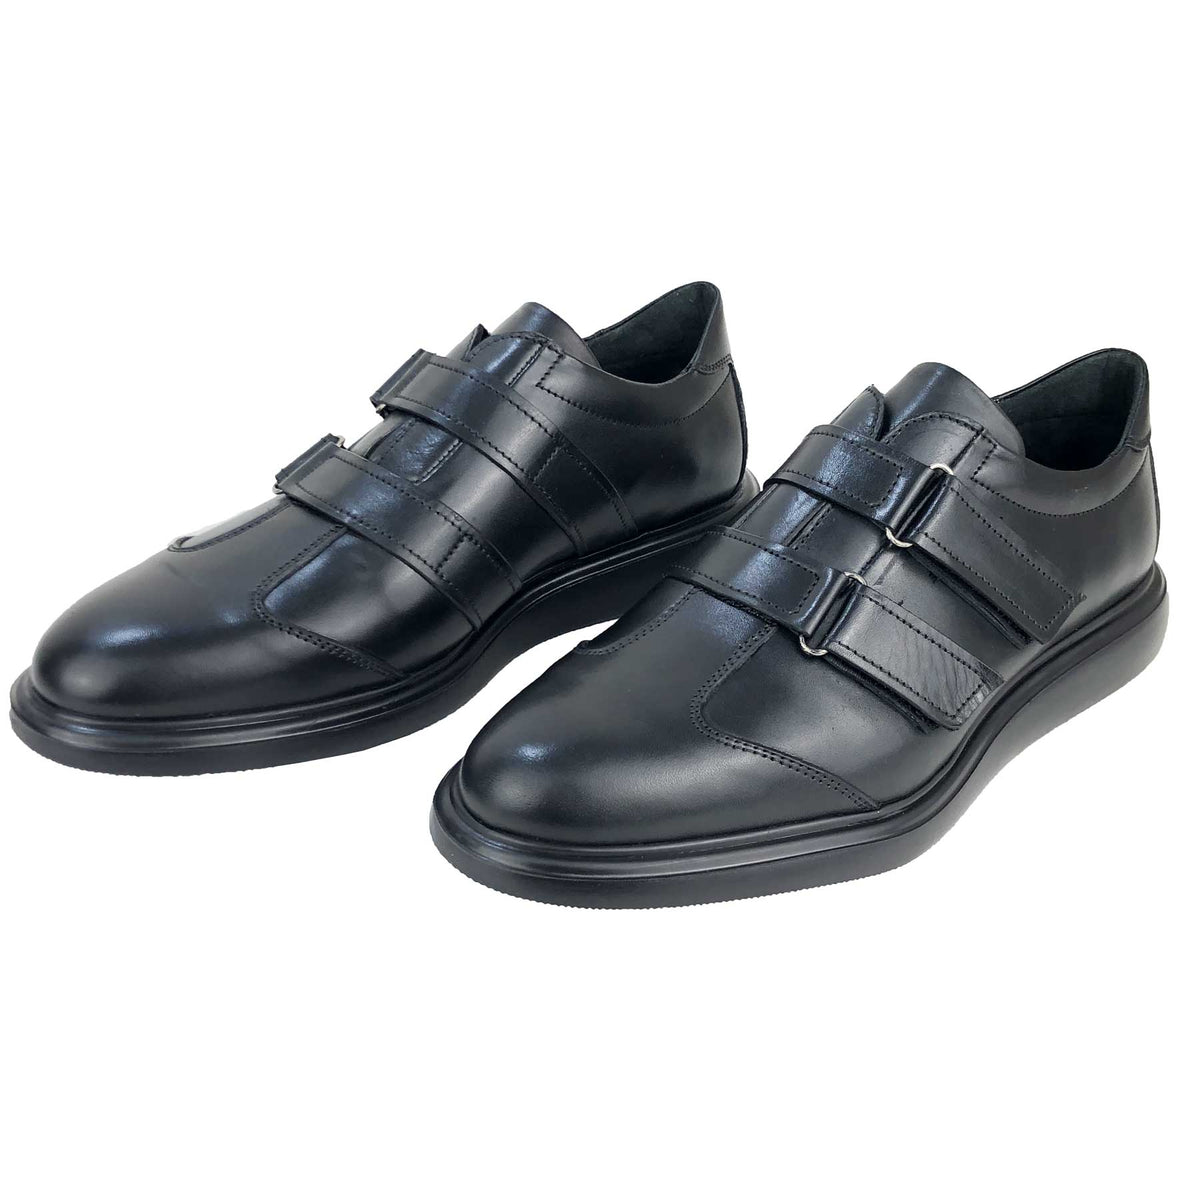 BSK462-015 - Chaussure cuir noir - deluxe-maroc